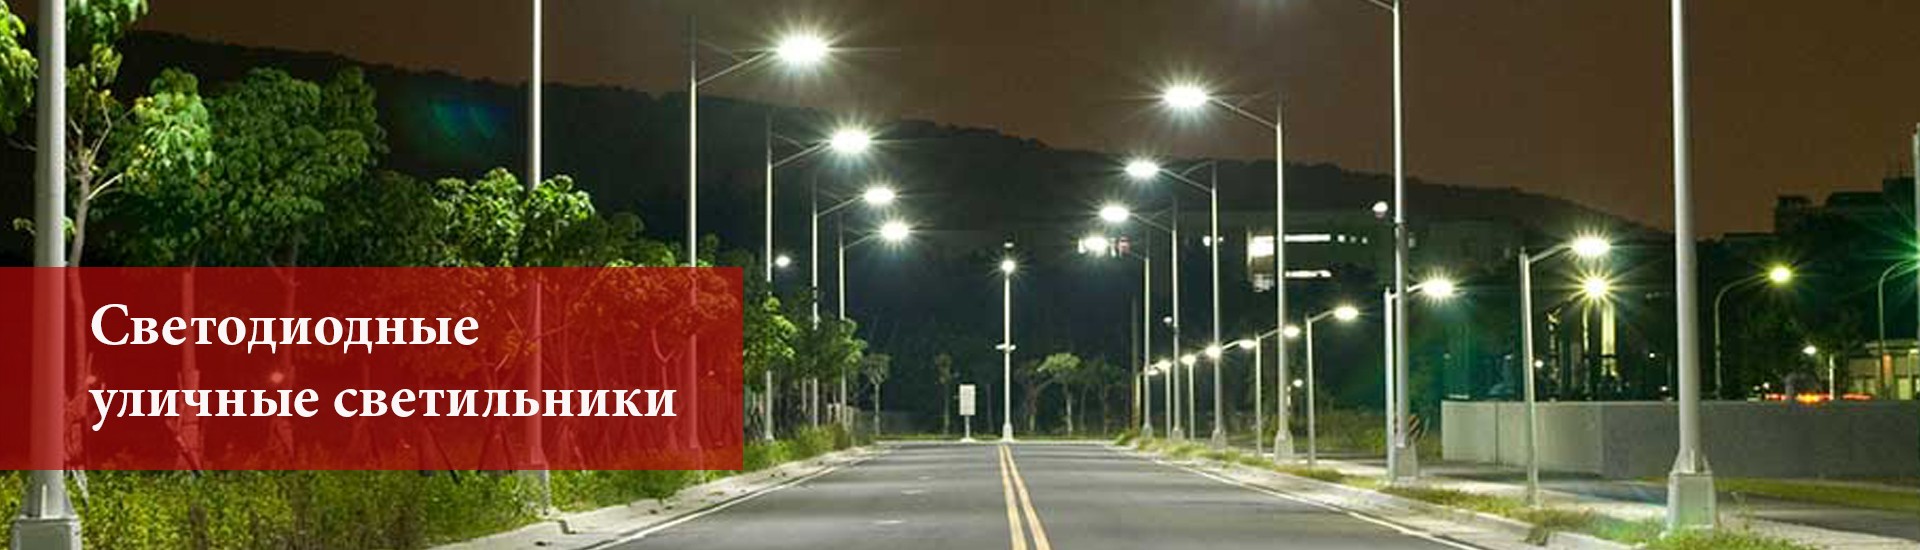 Светодиодное уличное освещение